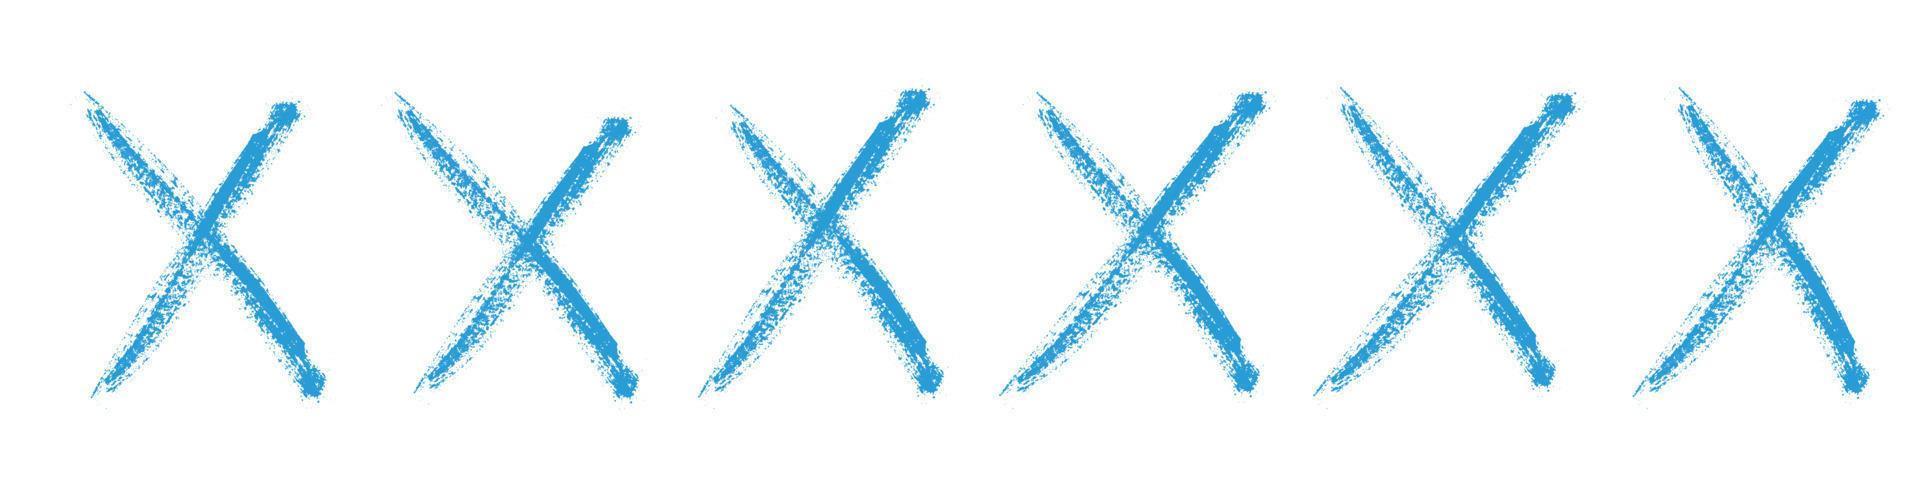 signe x bleu doodle de style de dessin à la main. marque de graffiti, pinceau de typographie. illustration vectorielle isolée vecteur